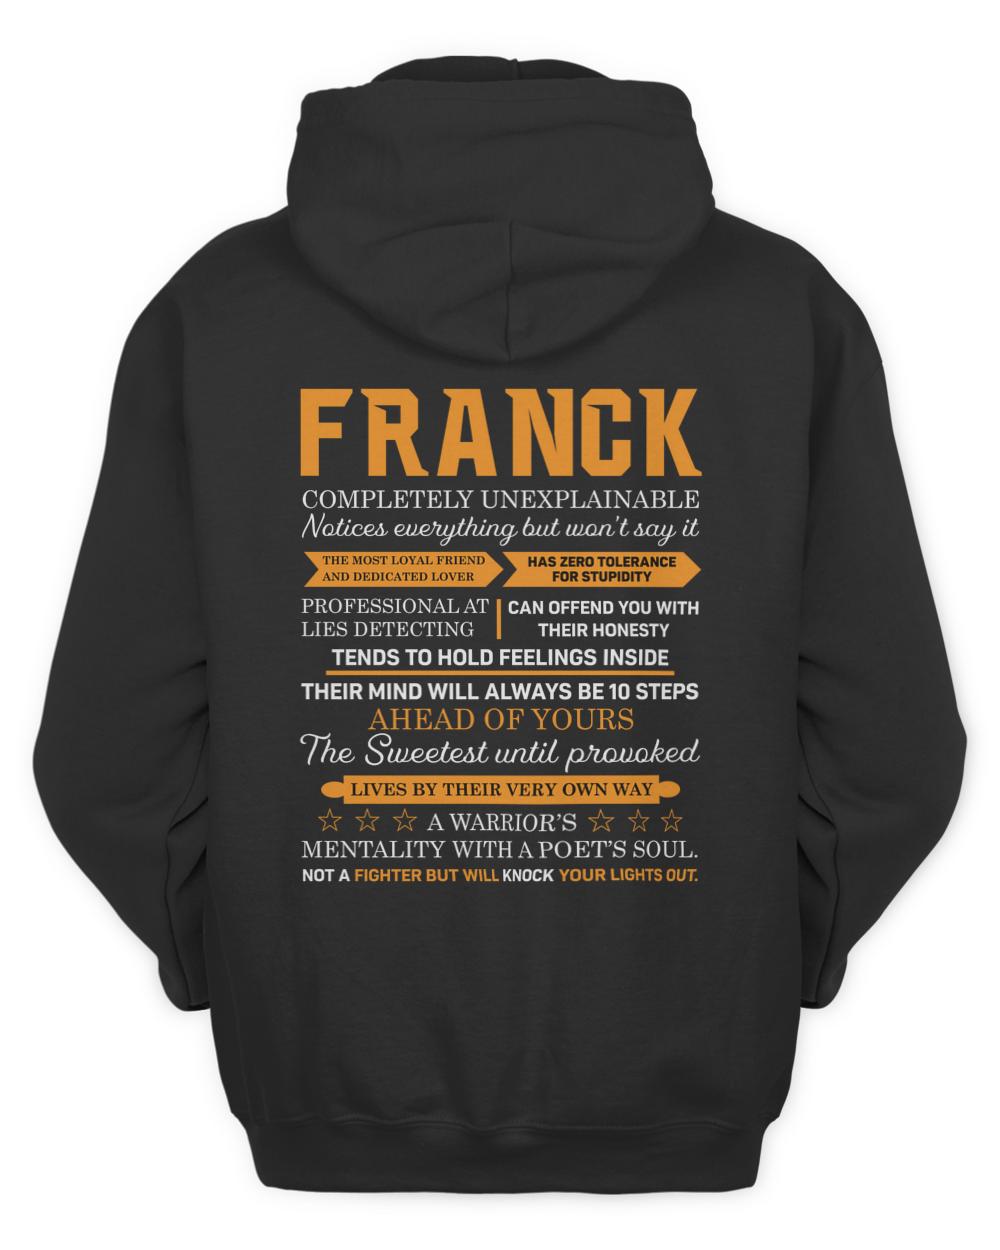 FRANCK-13K-N1-01